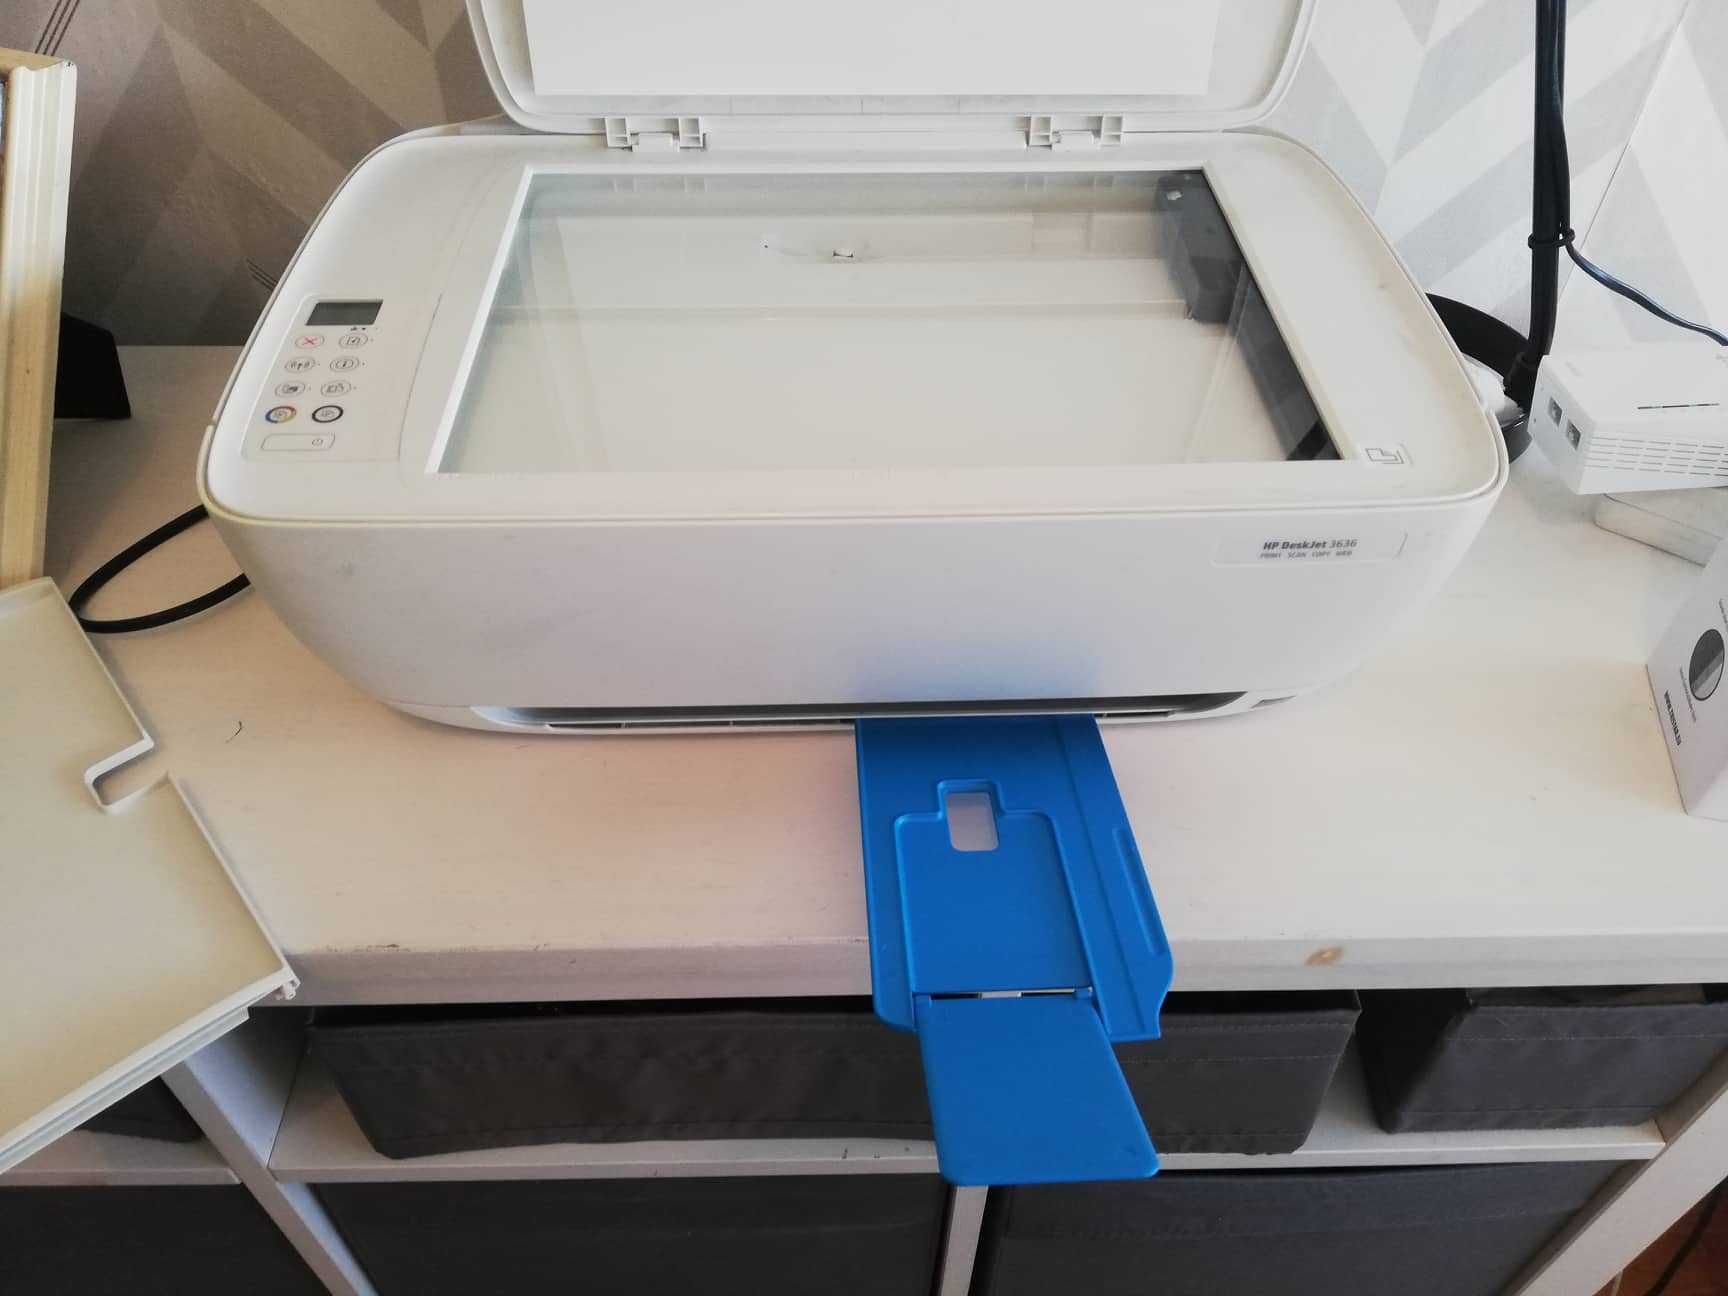 Impressora HP deskjet 3630